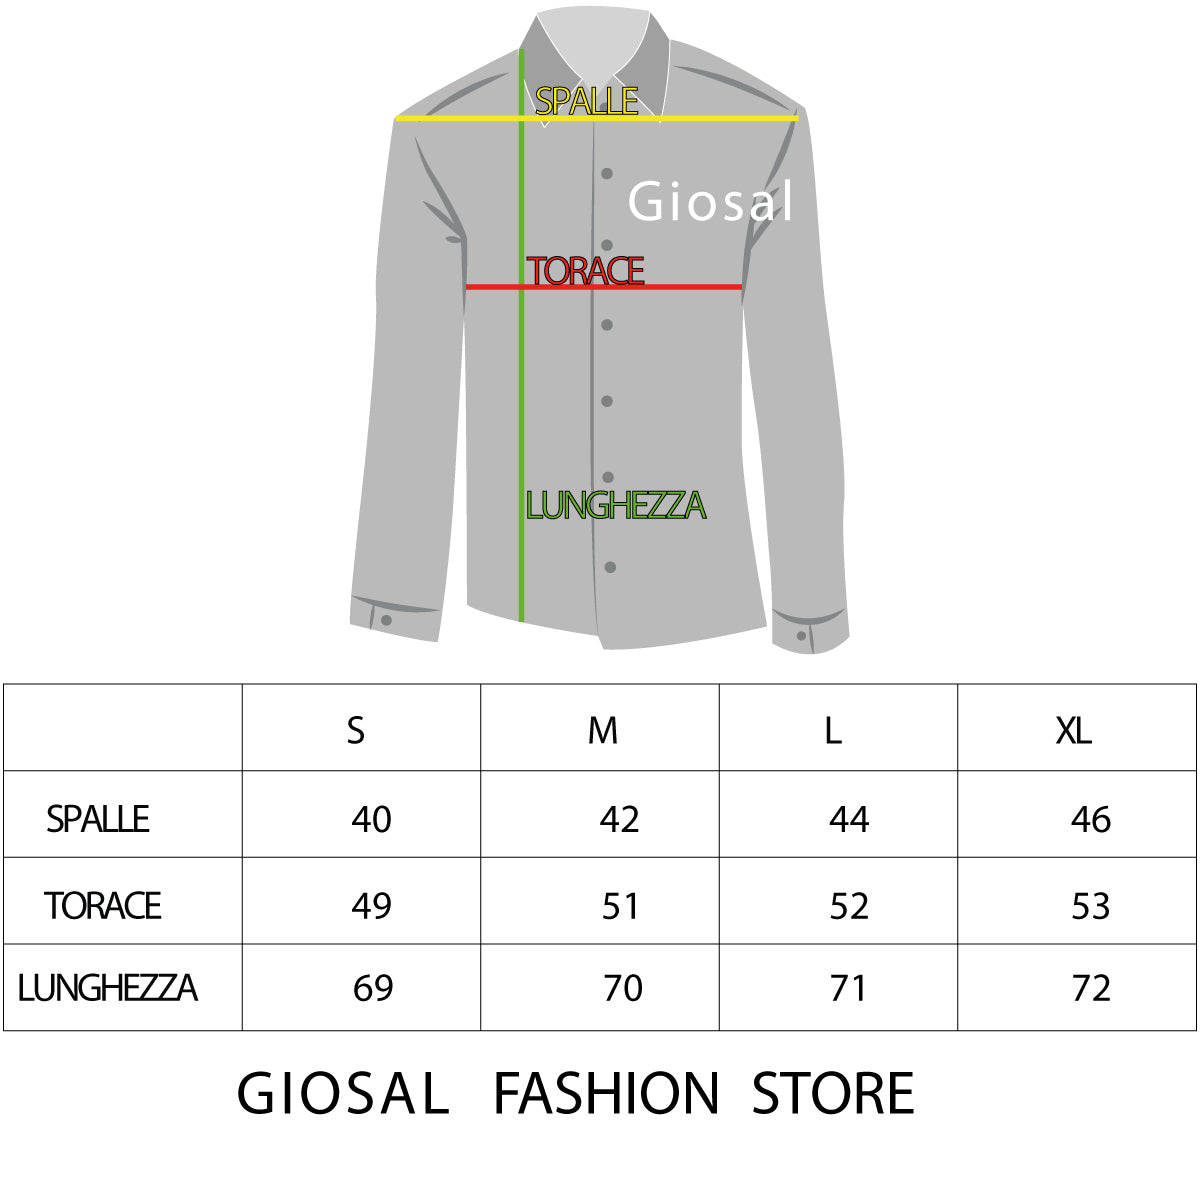 Camicia Uomo Con Colletto Manica Lunga Slim Fit Casual Cotone Fantasia Pois Blu GIOSAL-C1181A